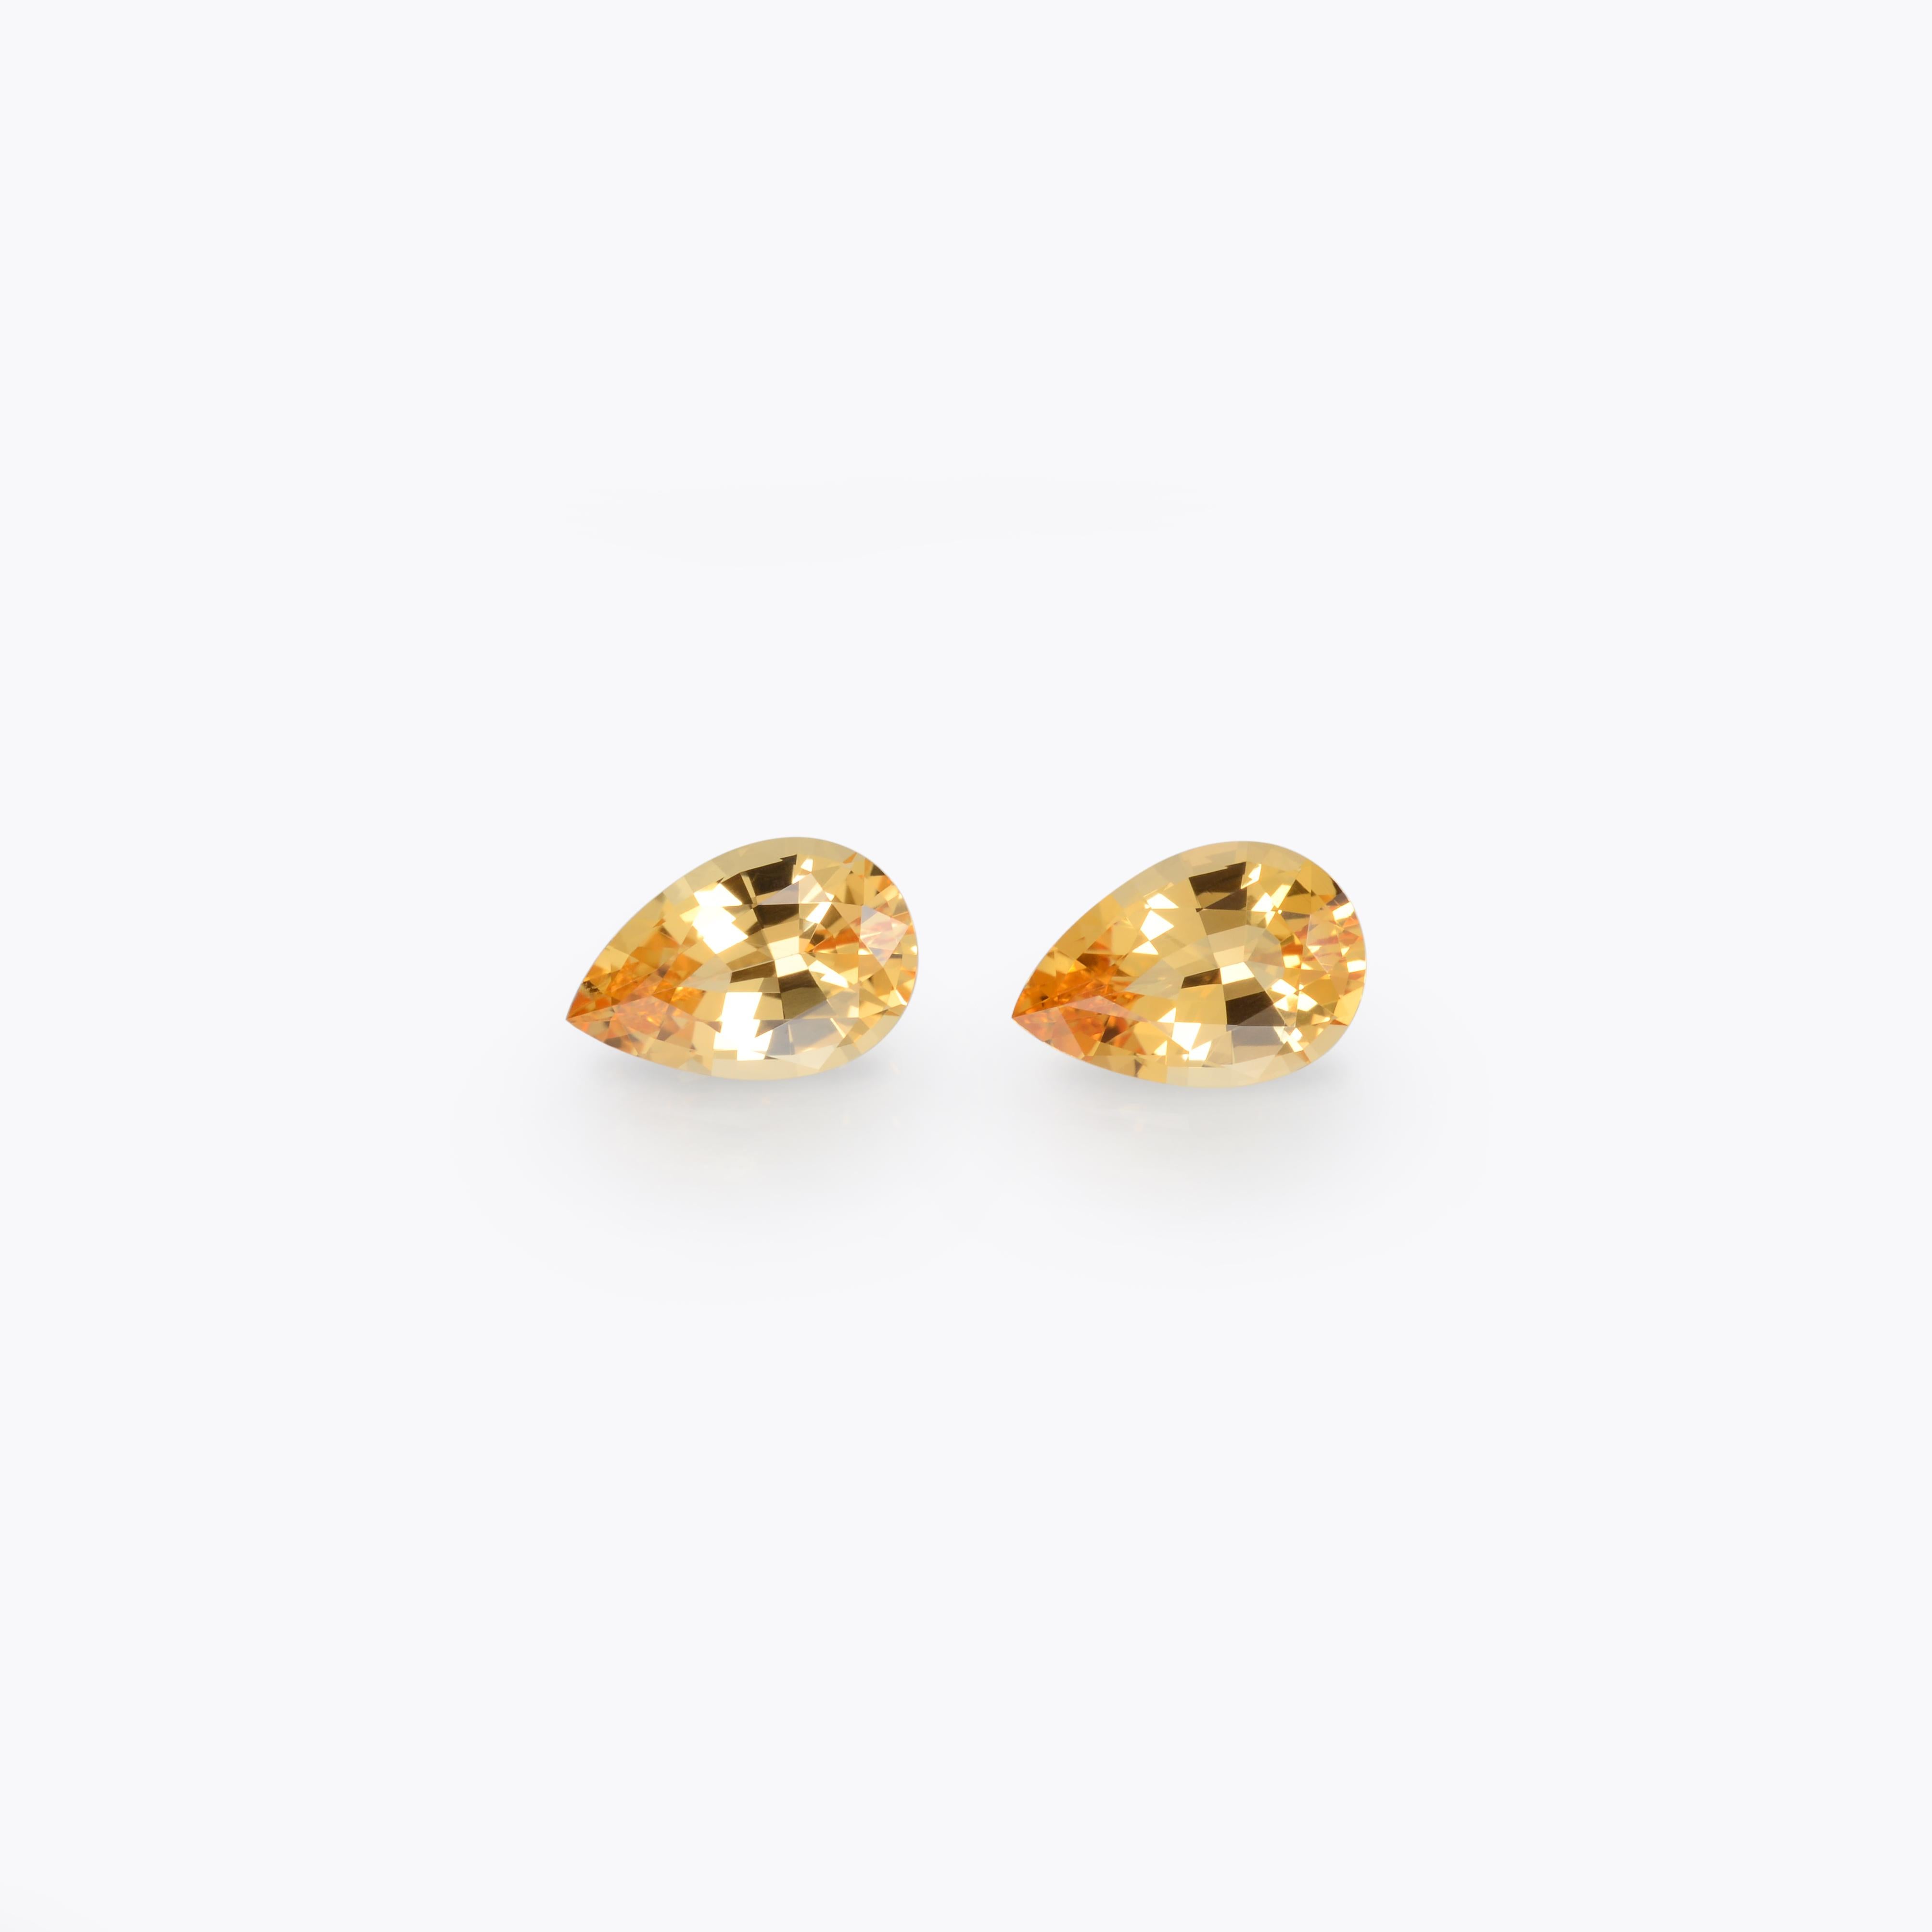 Superbe paire de pierres précieuses Topaze impériale jaune du Brésil de 2,53 carats, offerte en vrac.
Dimensions : 8,6 x 5,8 x 3,9 mm : 8,6 x 5,8 x 3,9 mm.
Les retours sont acceptés et pris en charge dans les sept jours suivant la livraison.
Nous